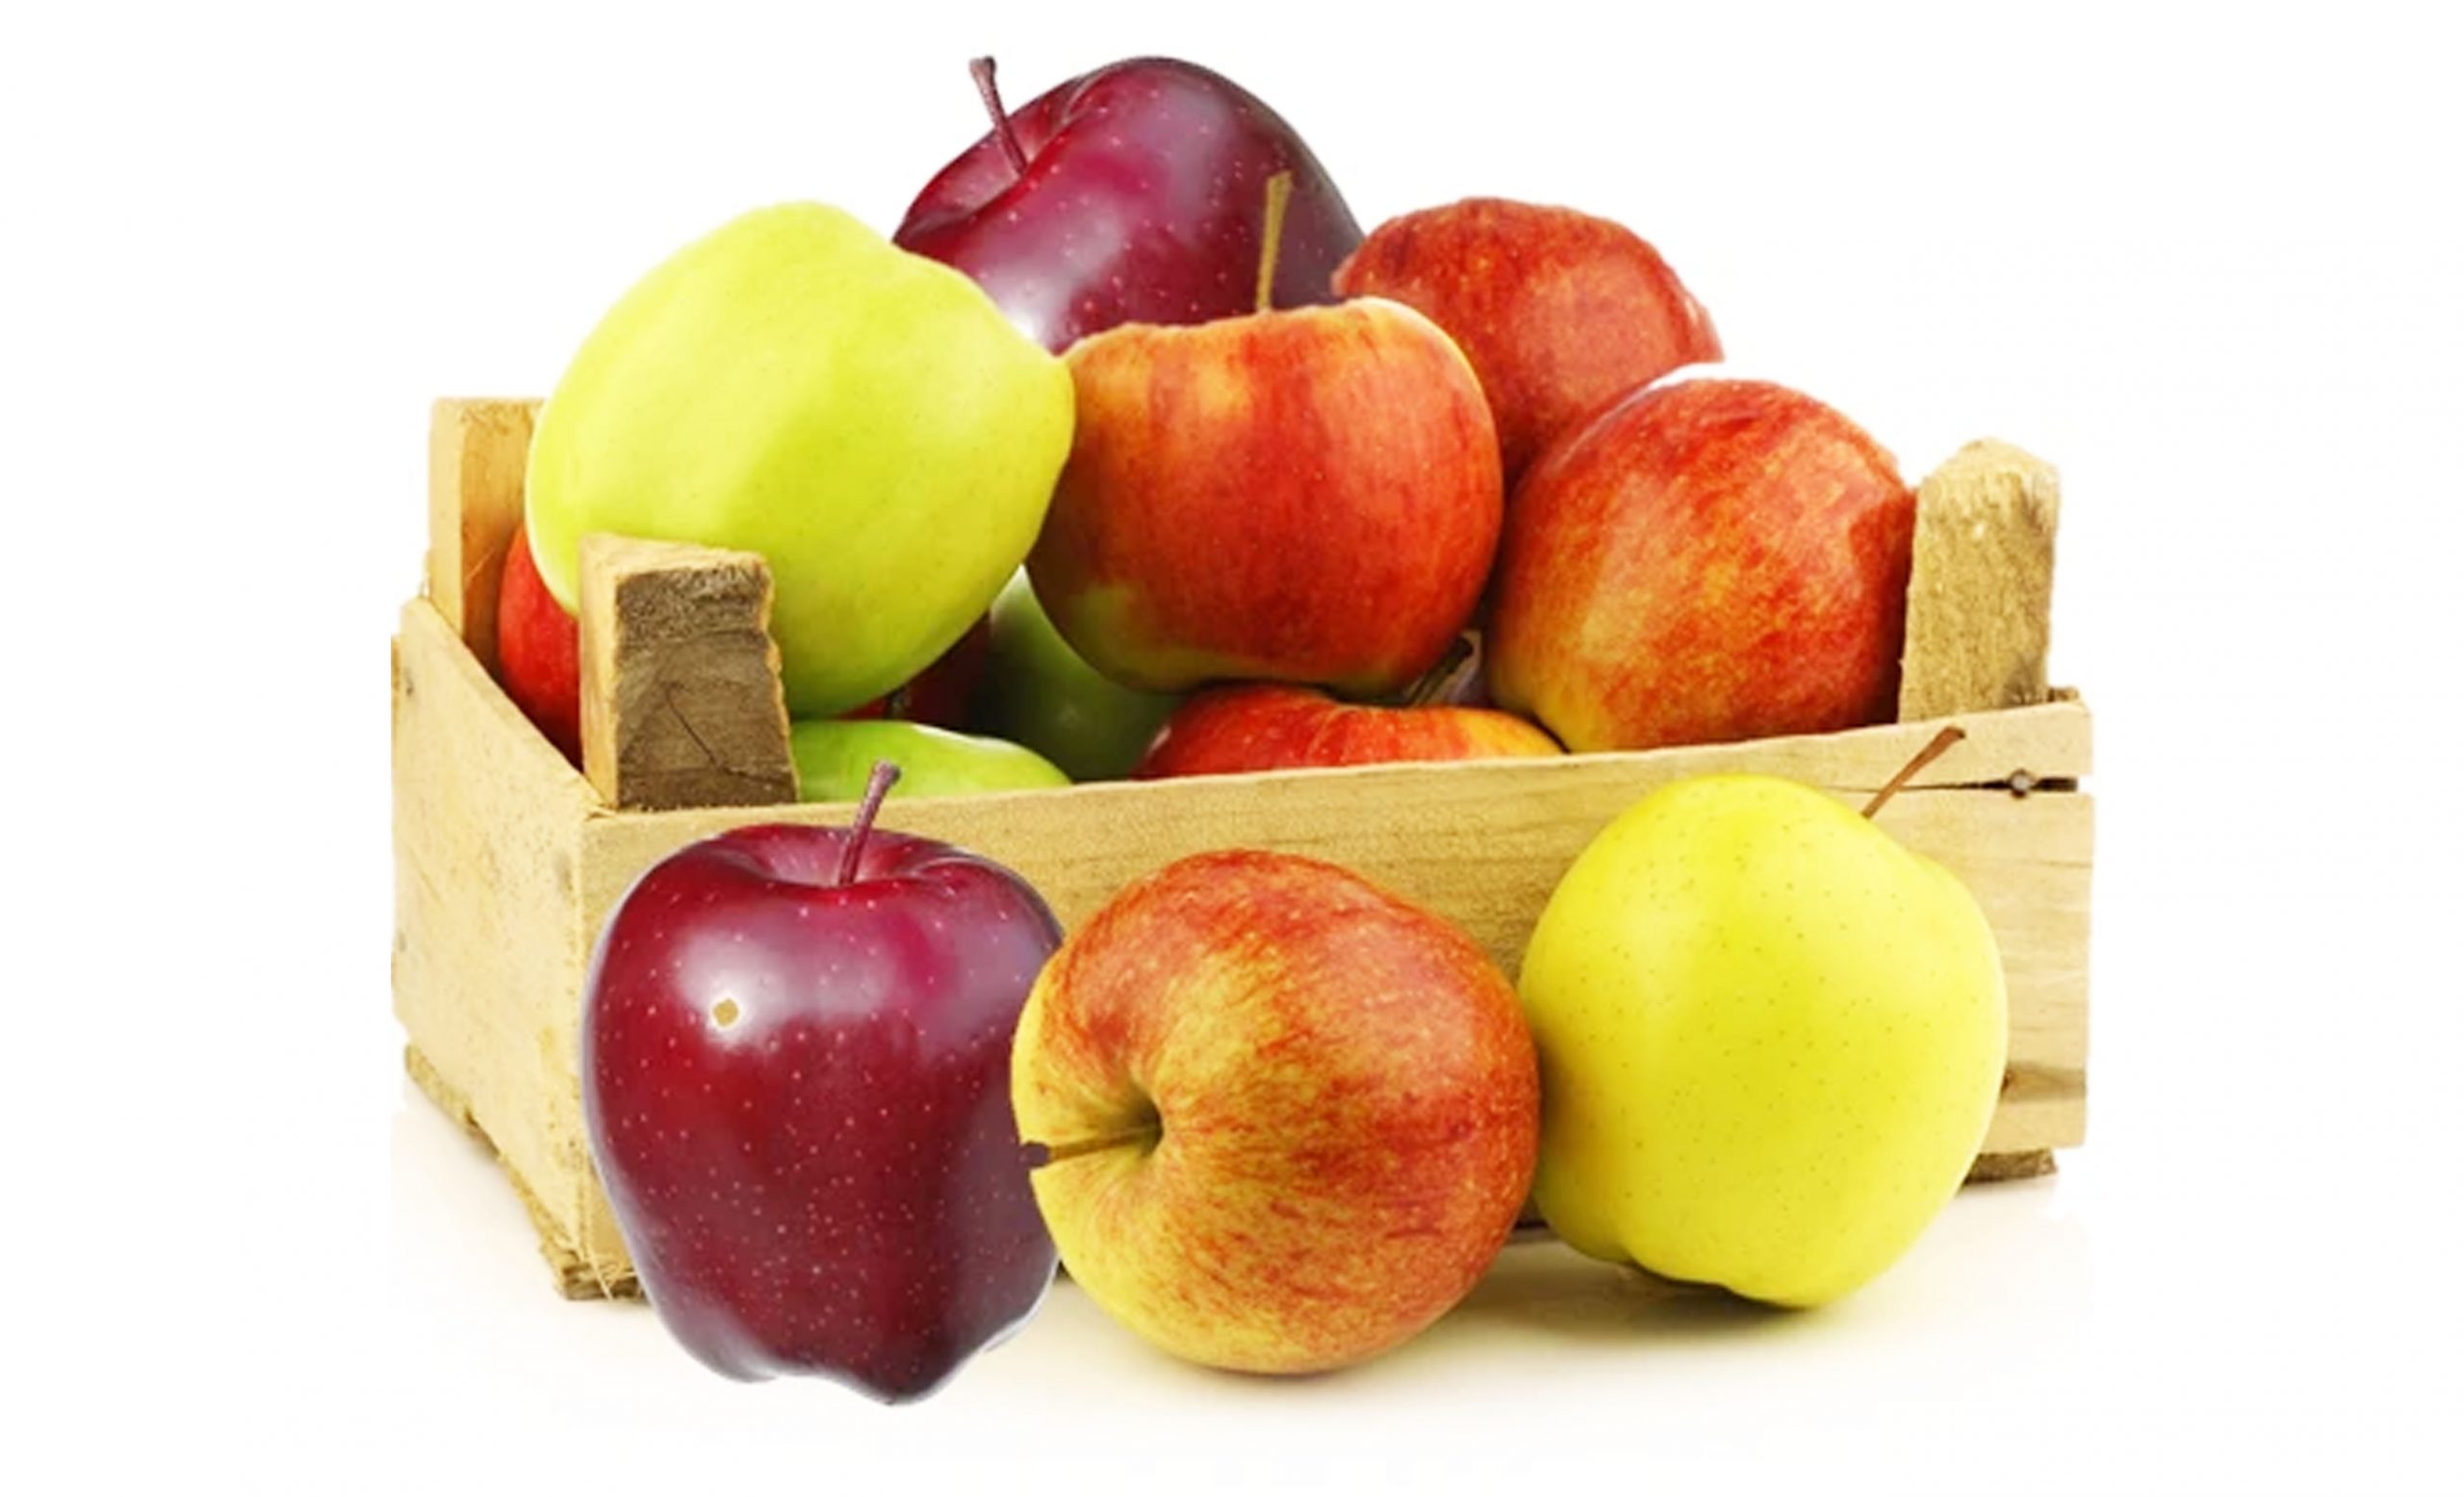 Uncountable Varieties of Apples